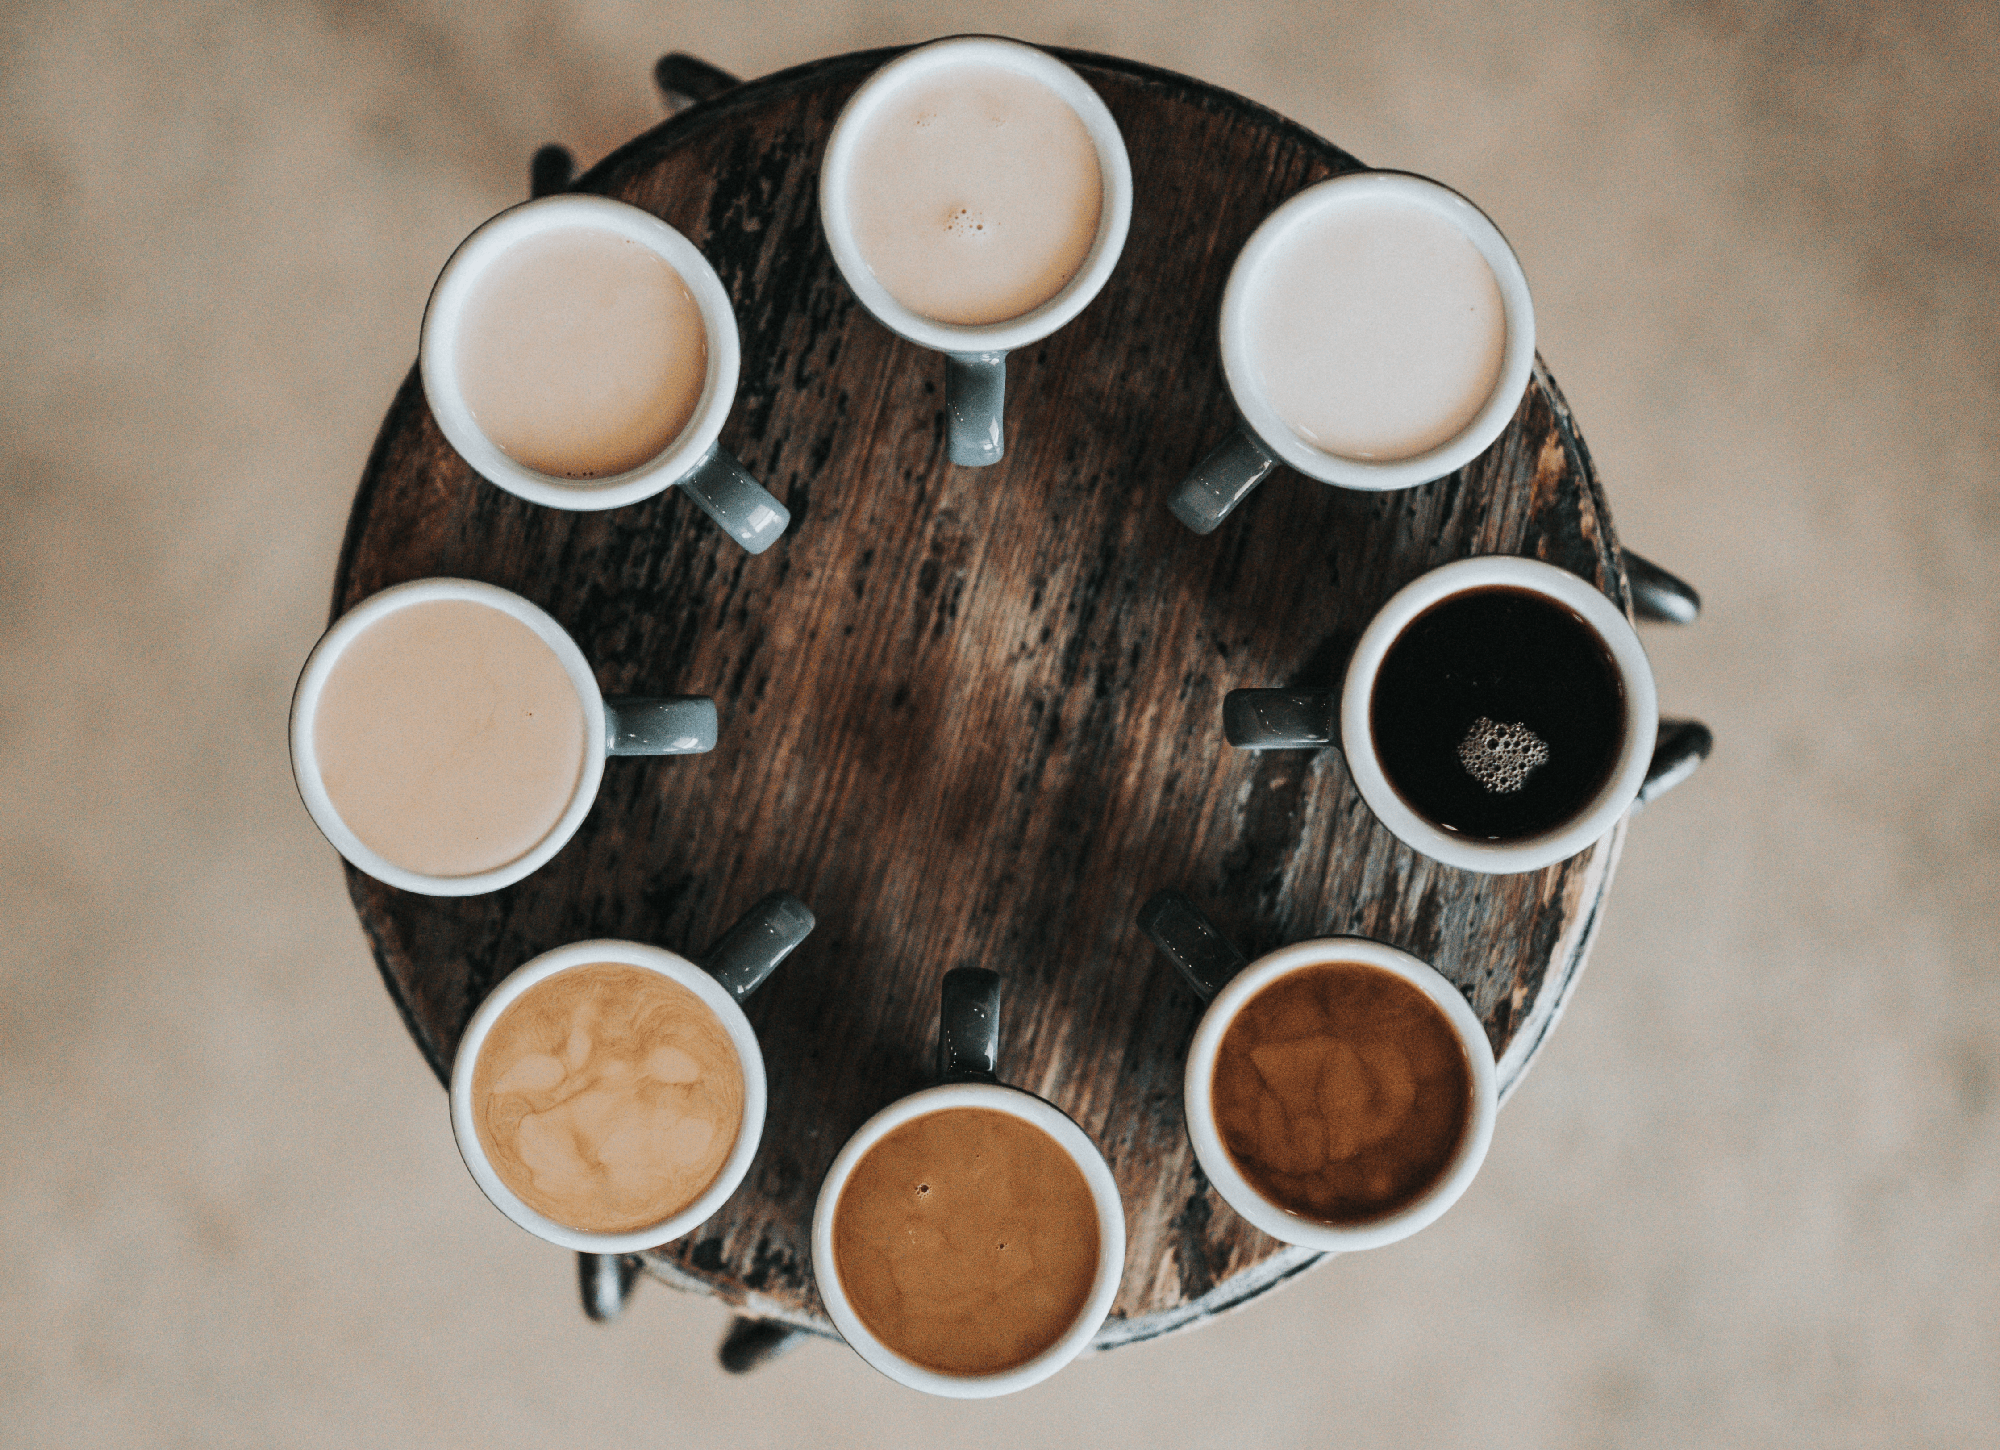 Choice of coffee cups.